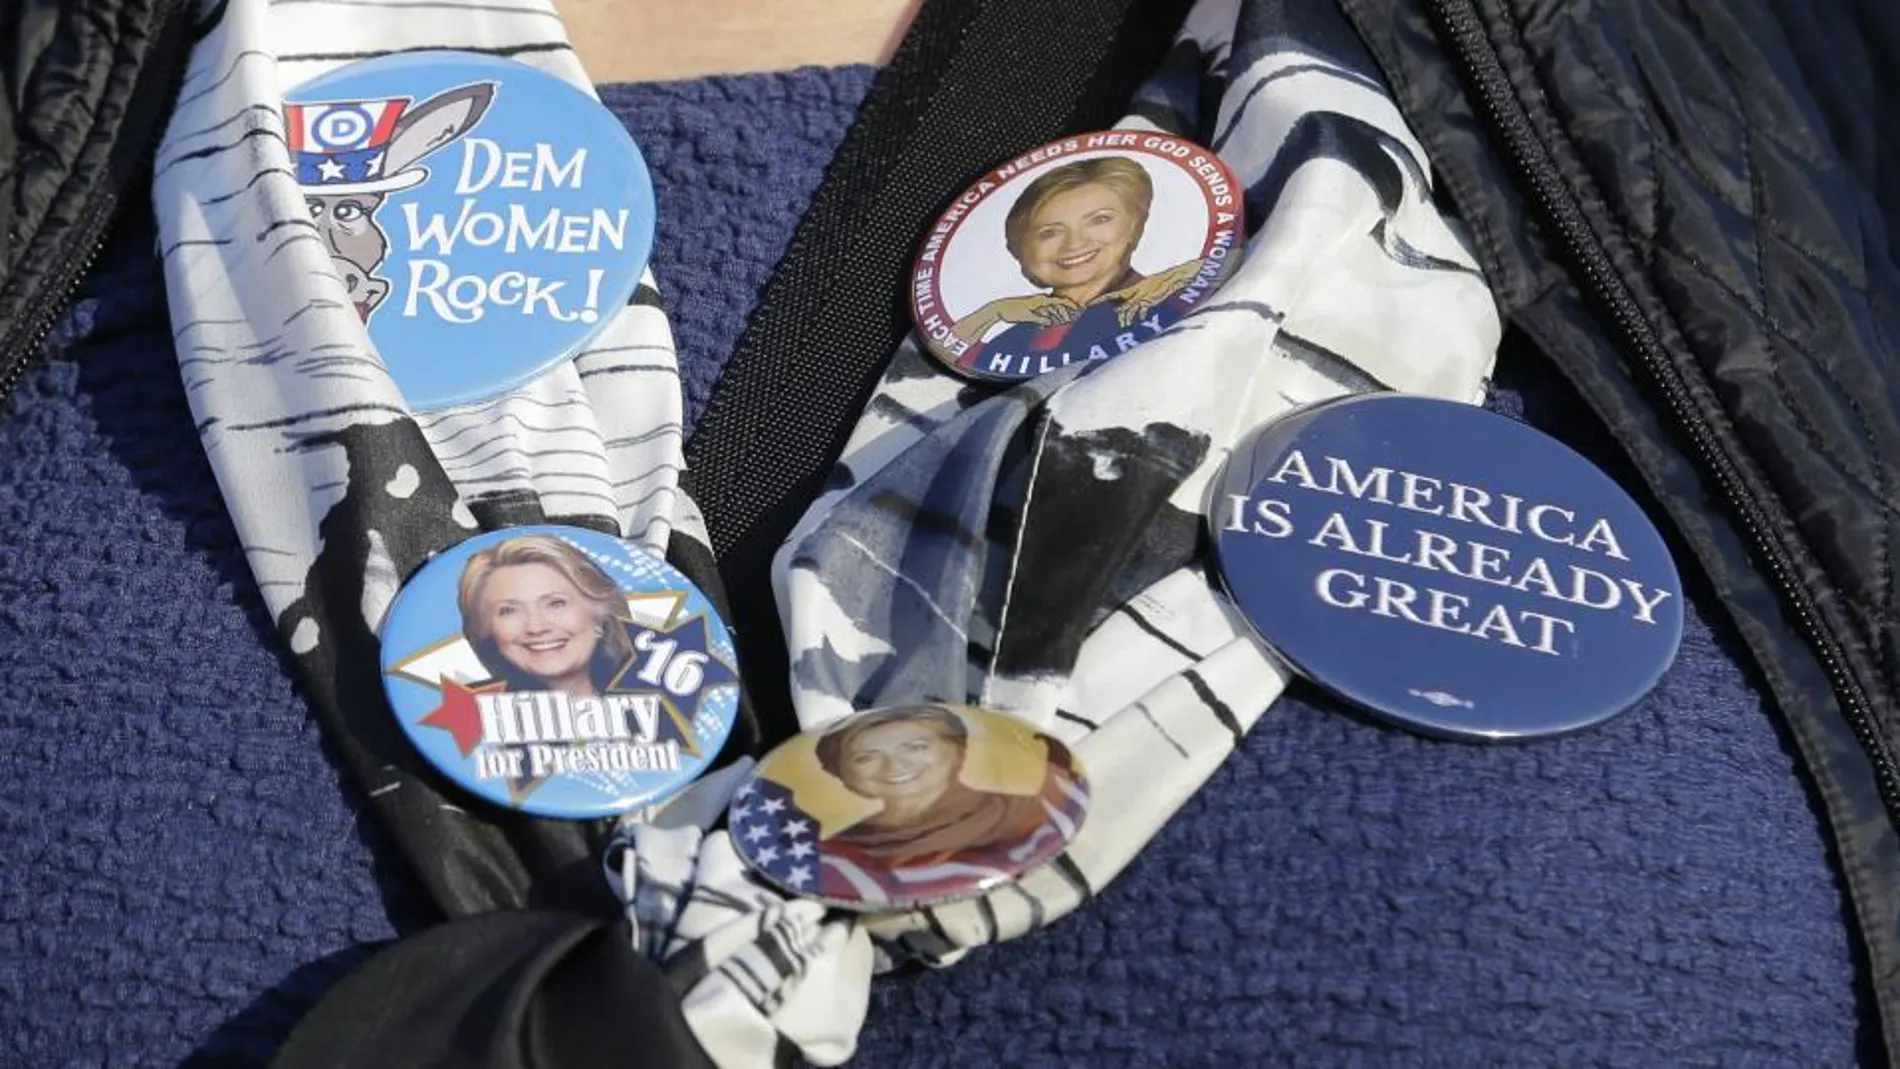 Una mujer muestra las chapas que lleva de su candidata, Hillary Clinton